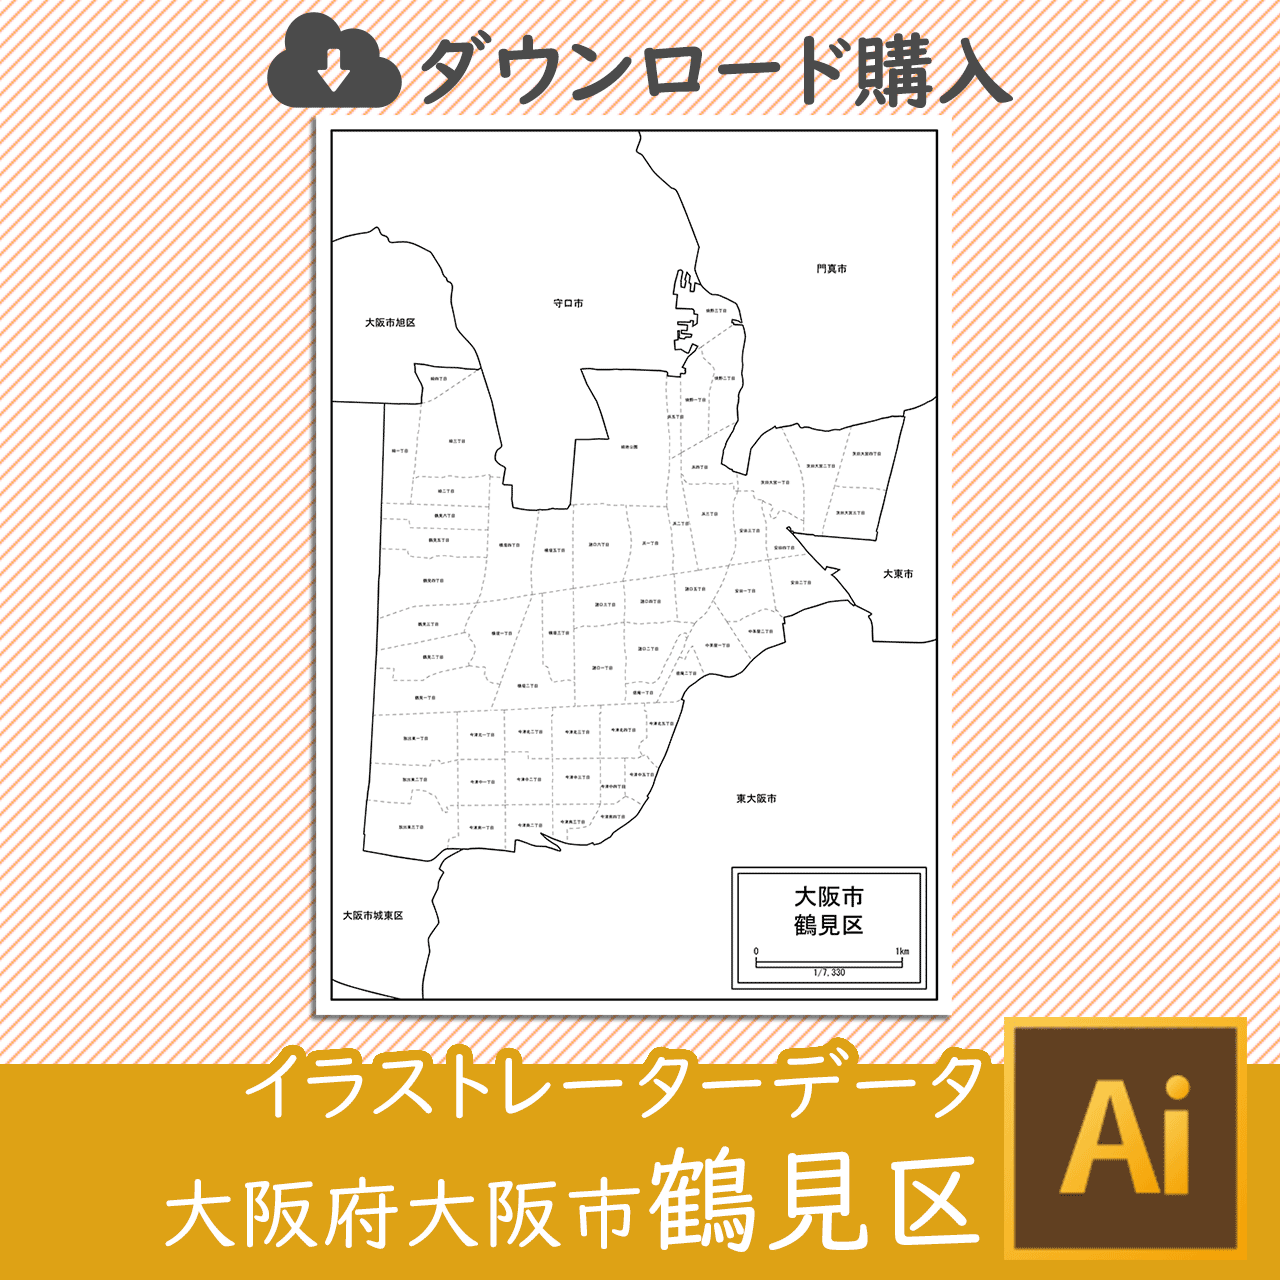 大阪市鶴見区の白地図のサムネイル画像